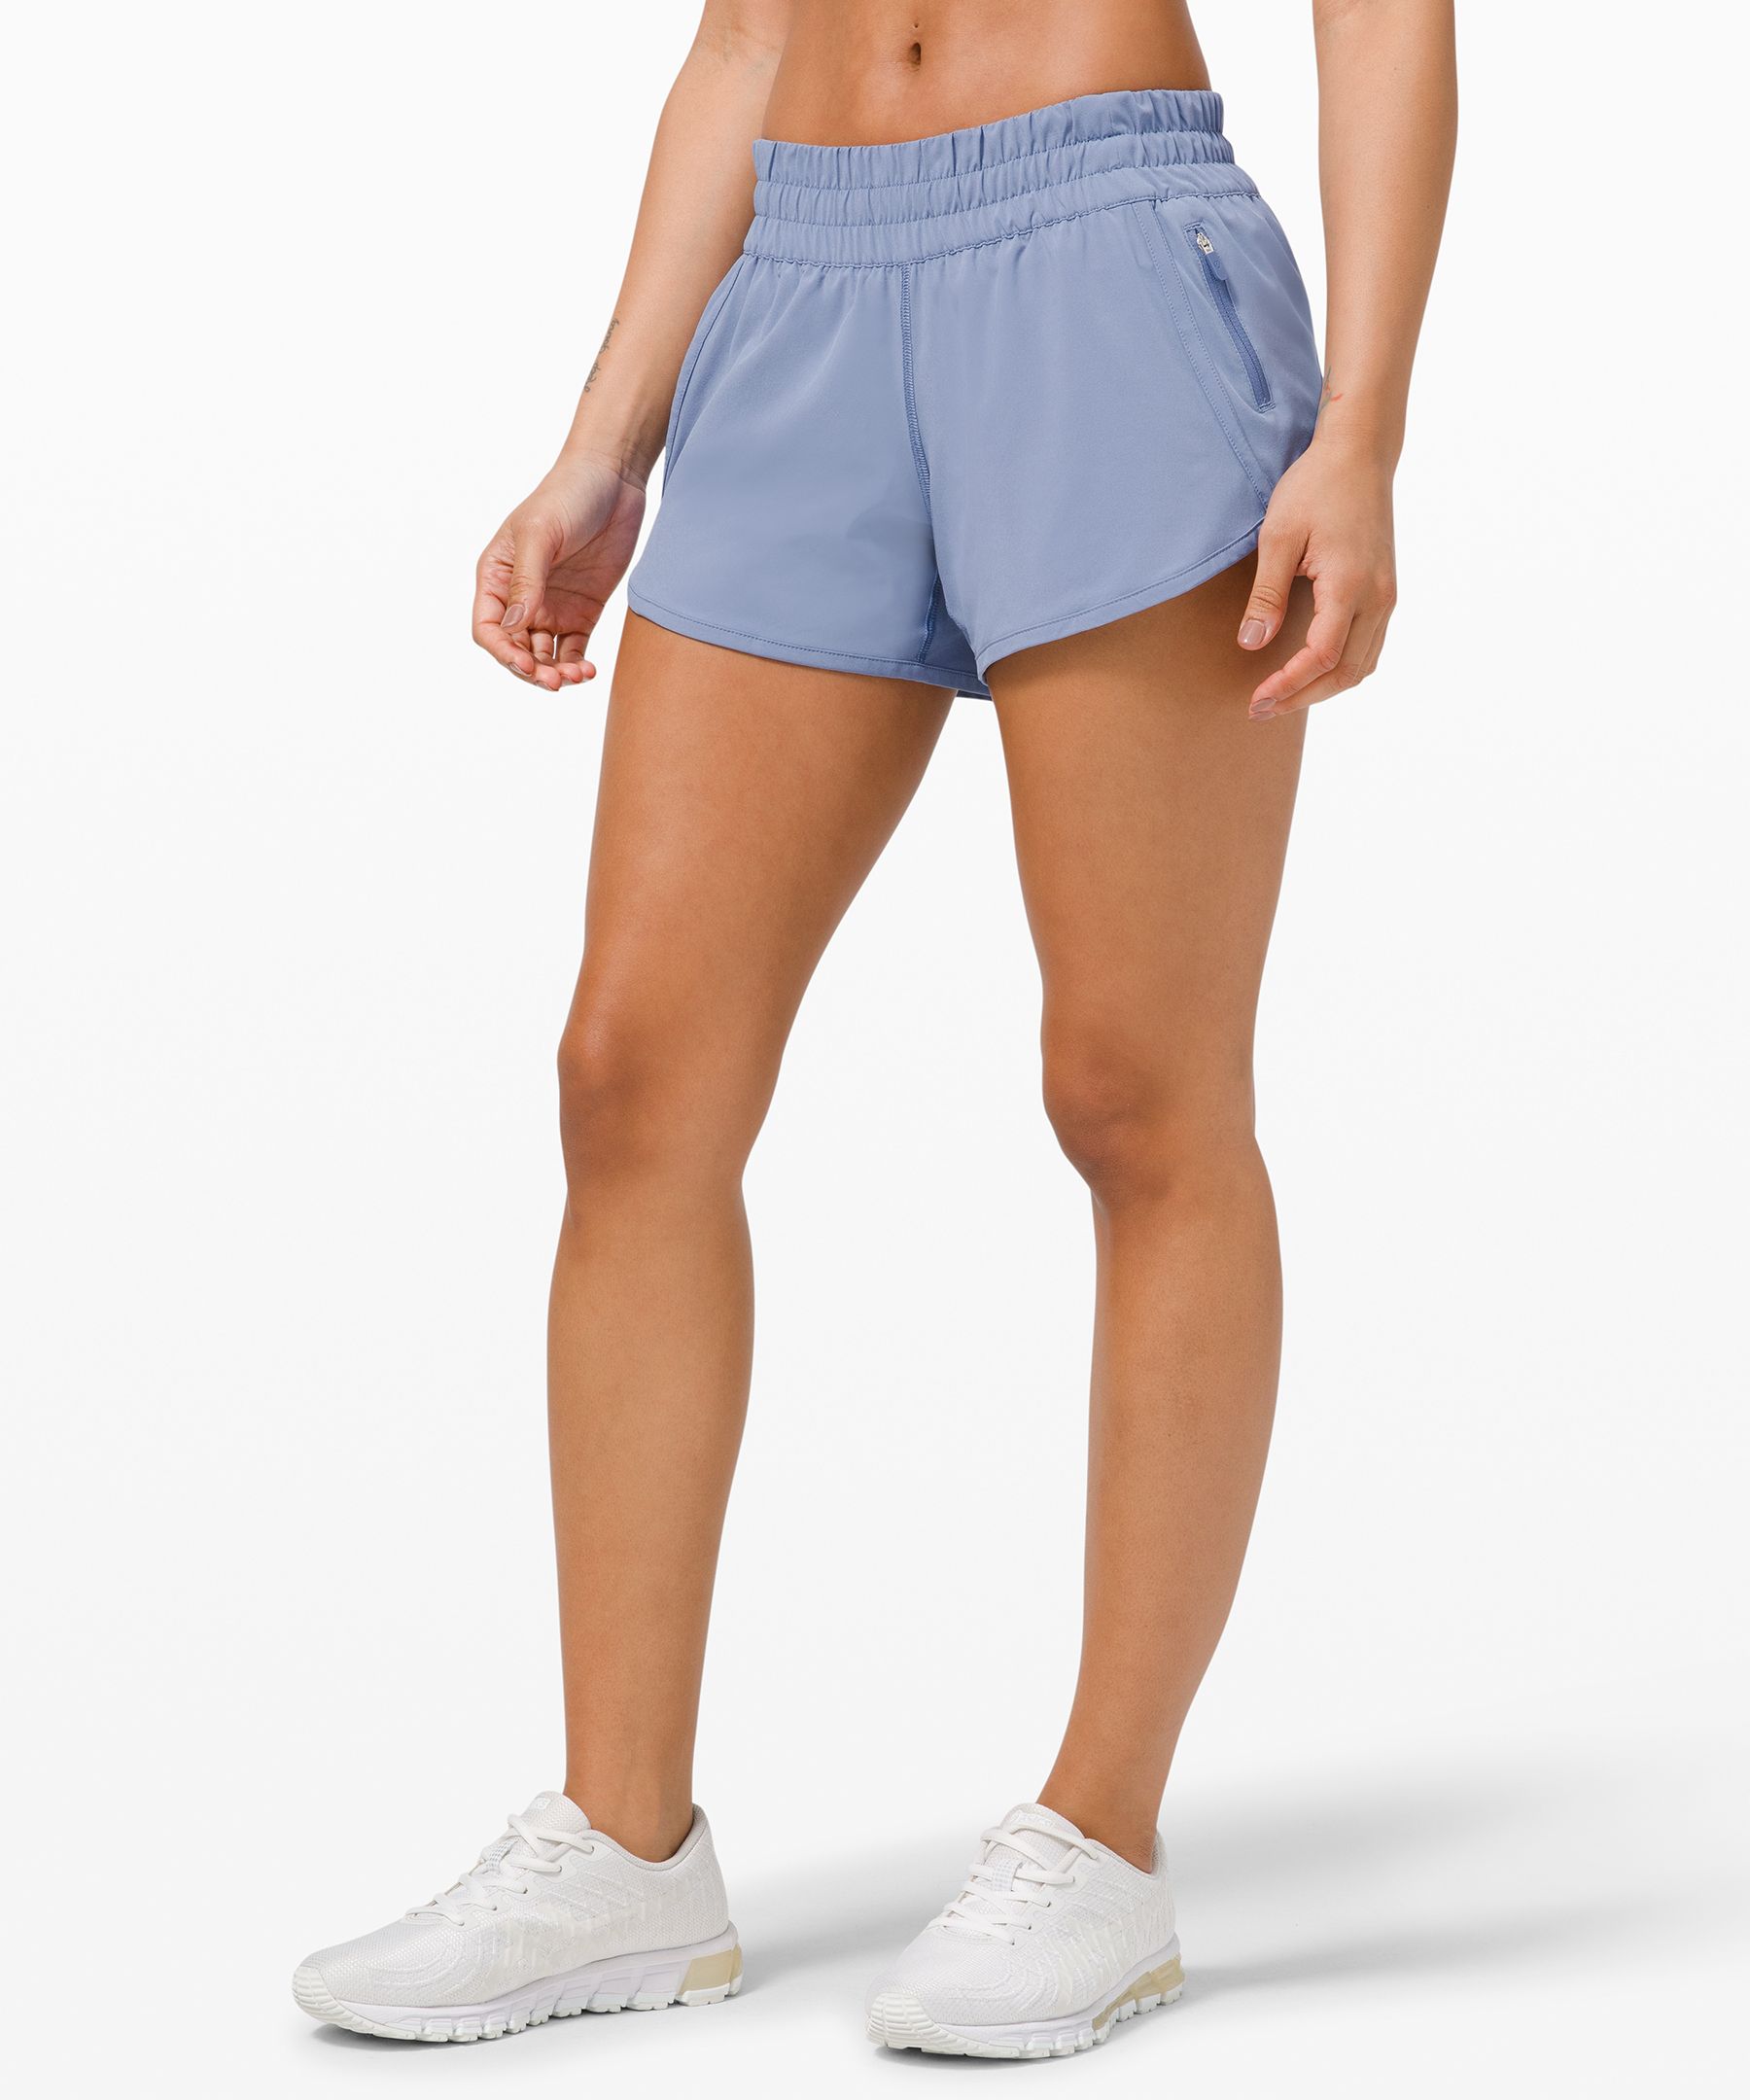 lululemon shorts size 8